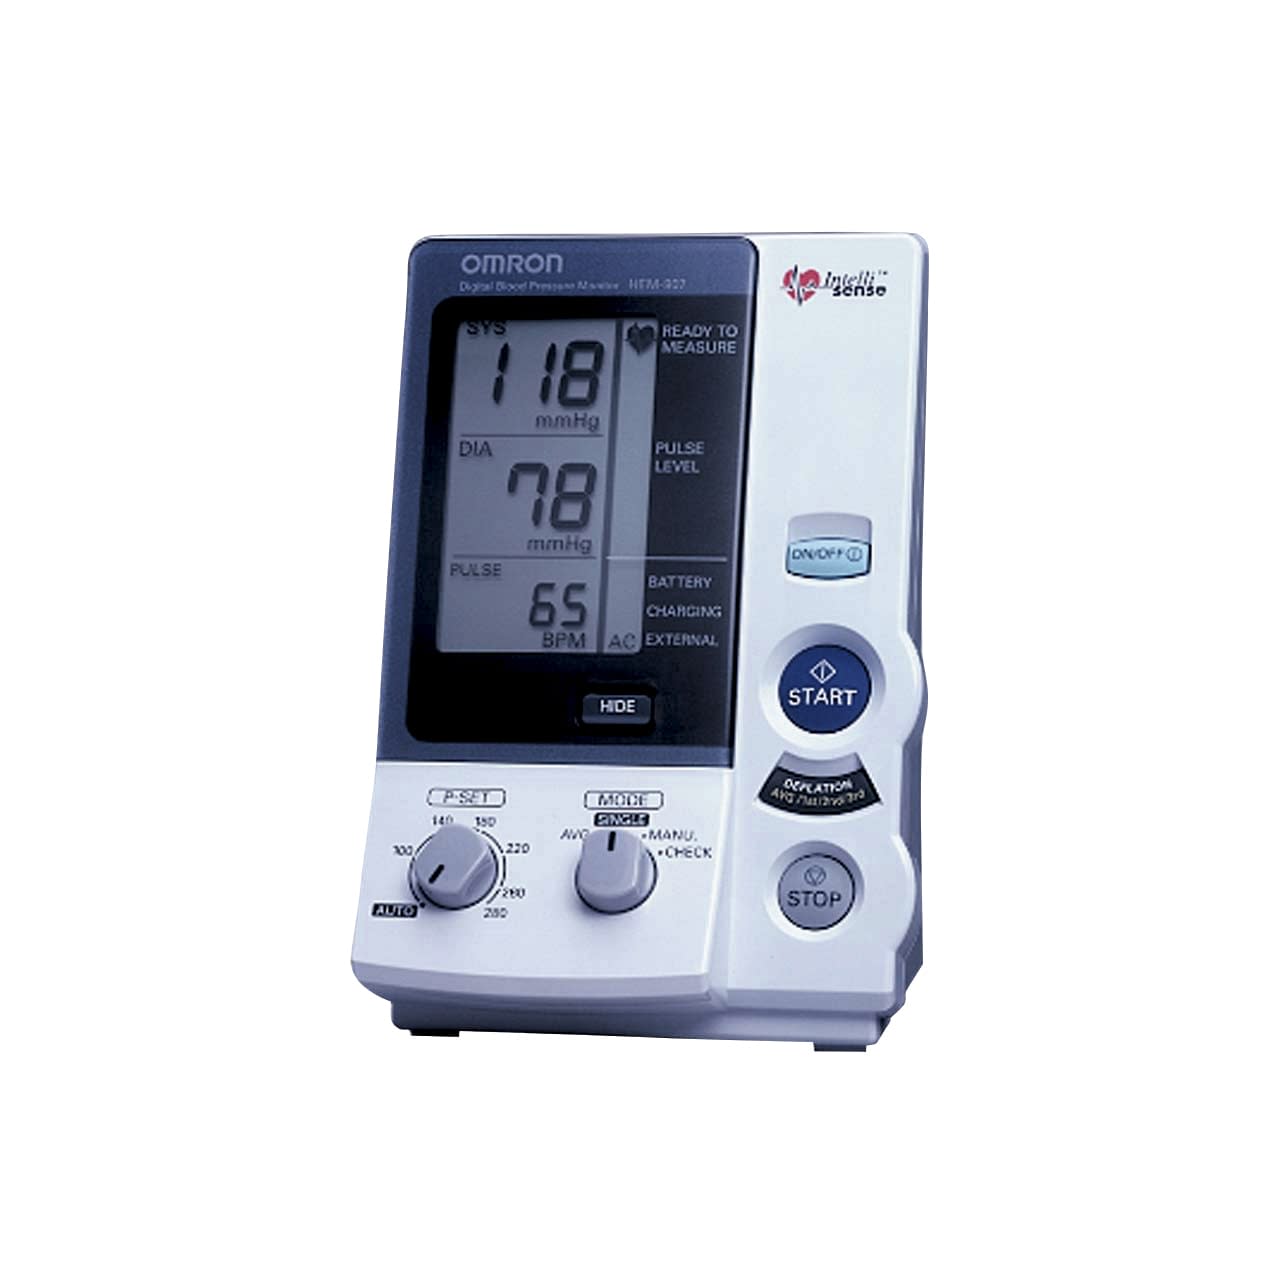 (02-3047-00)デジタル自動血圧計（施設用） HEM-907 ﾃﾞｼﾞﾀﾙｼﾞﾄﾞｳｹﾂｱﾂｹｲｼｾﾂ(フクダコーリン)【1台単位】【2019年カタログ商品】